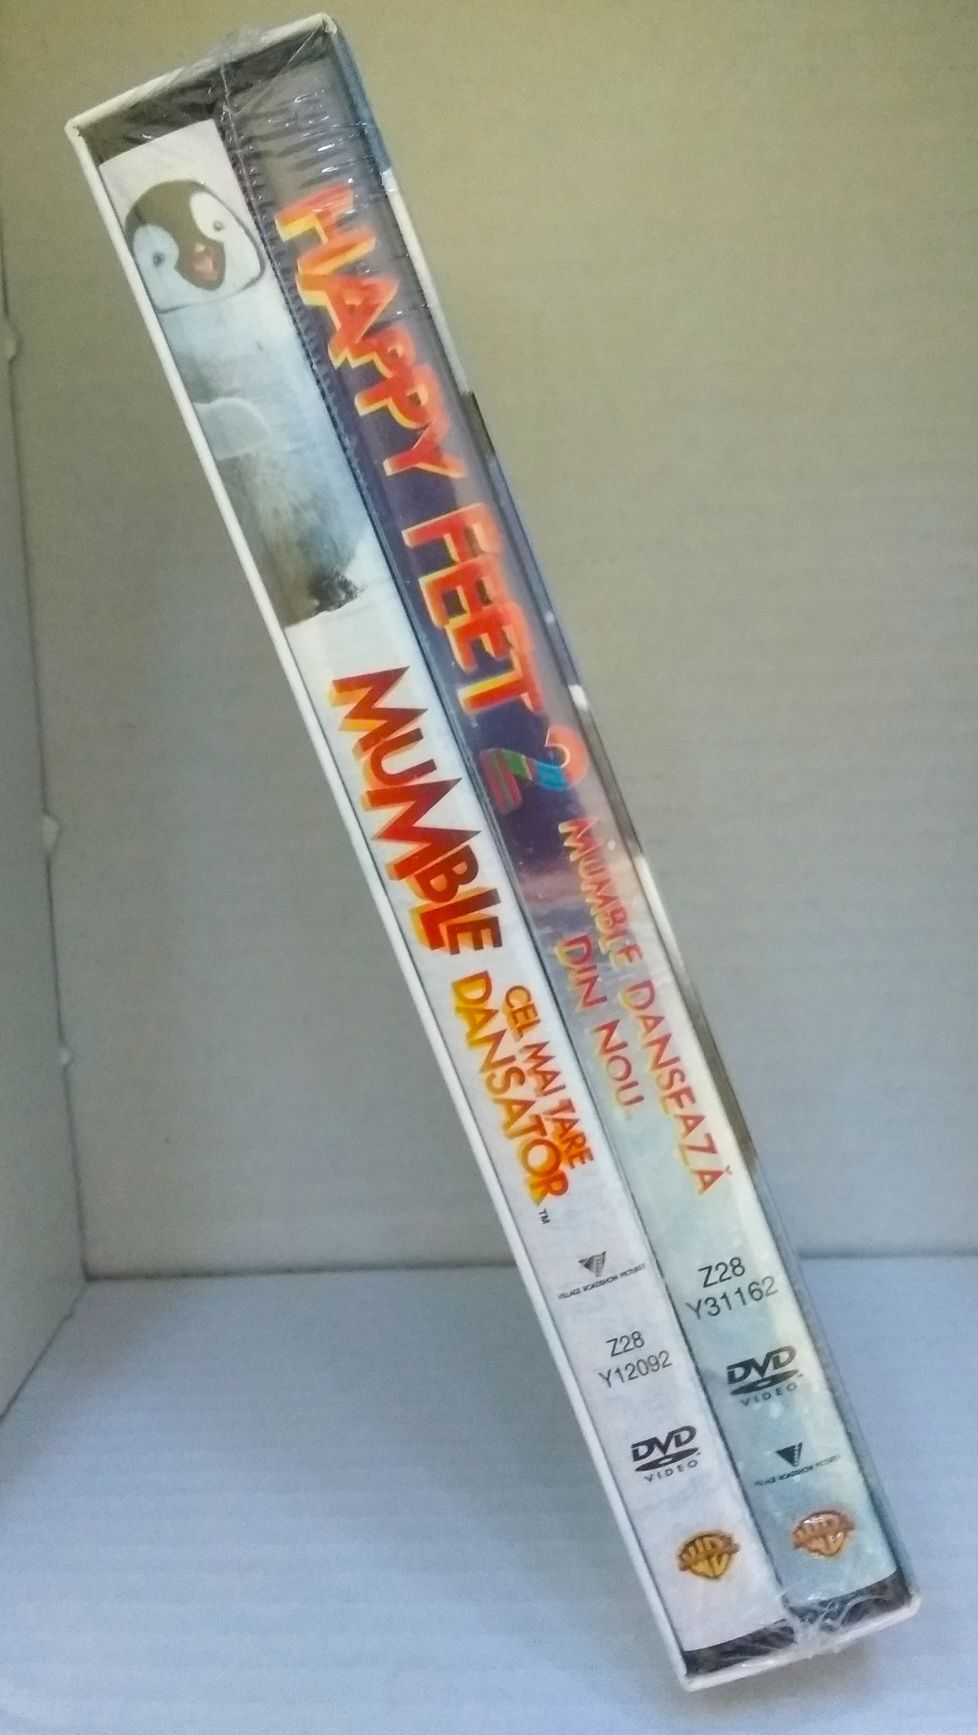 Filmele HappyFeet 1 și 2 [DVD]. Noi, țiplate